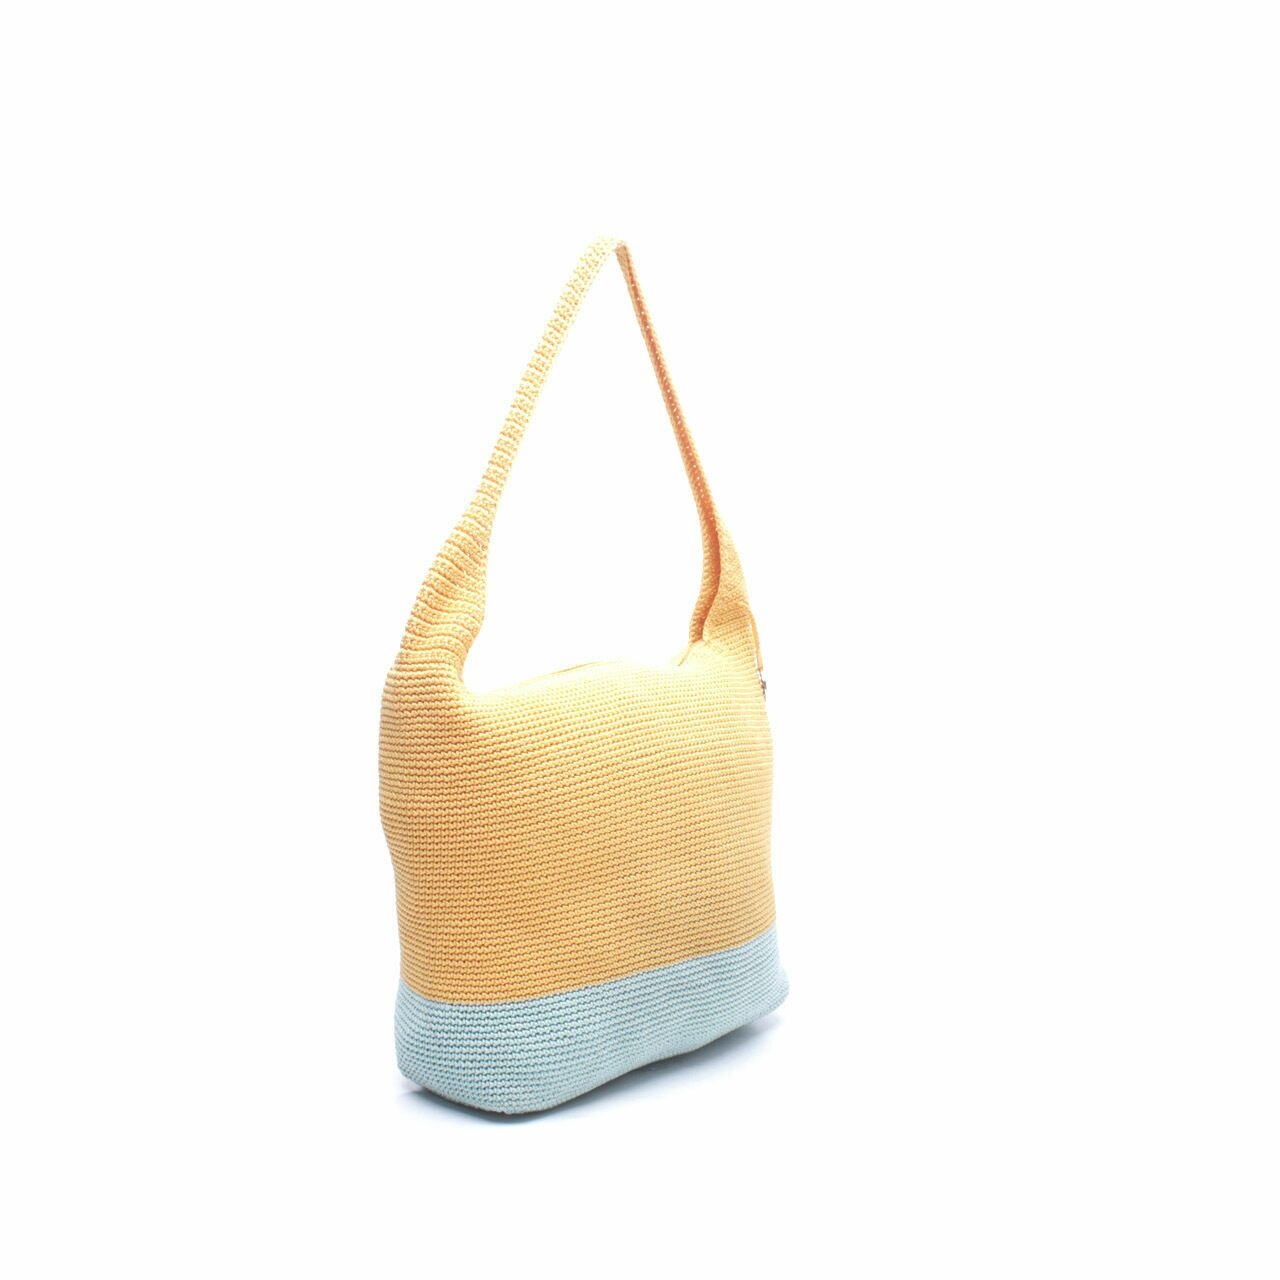 DOWA Mustard & Light Blue Shoulder Bag